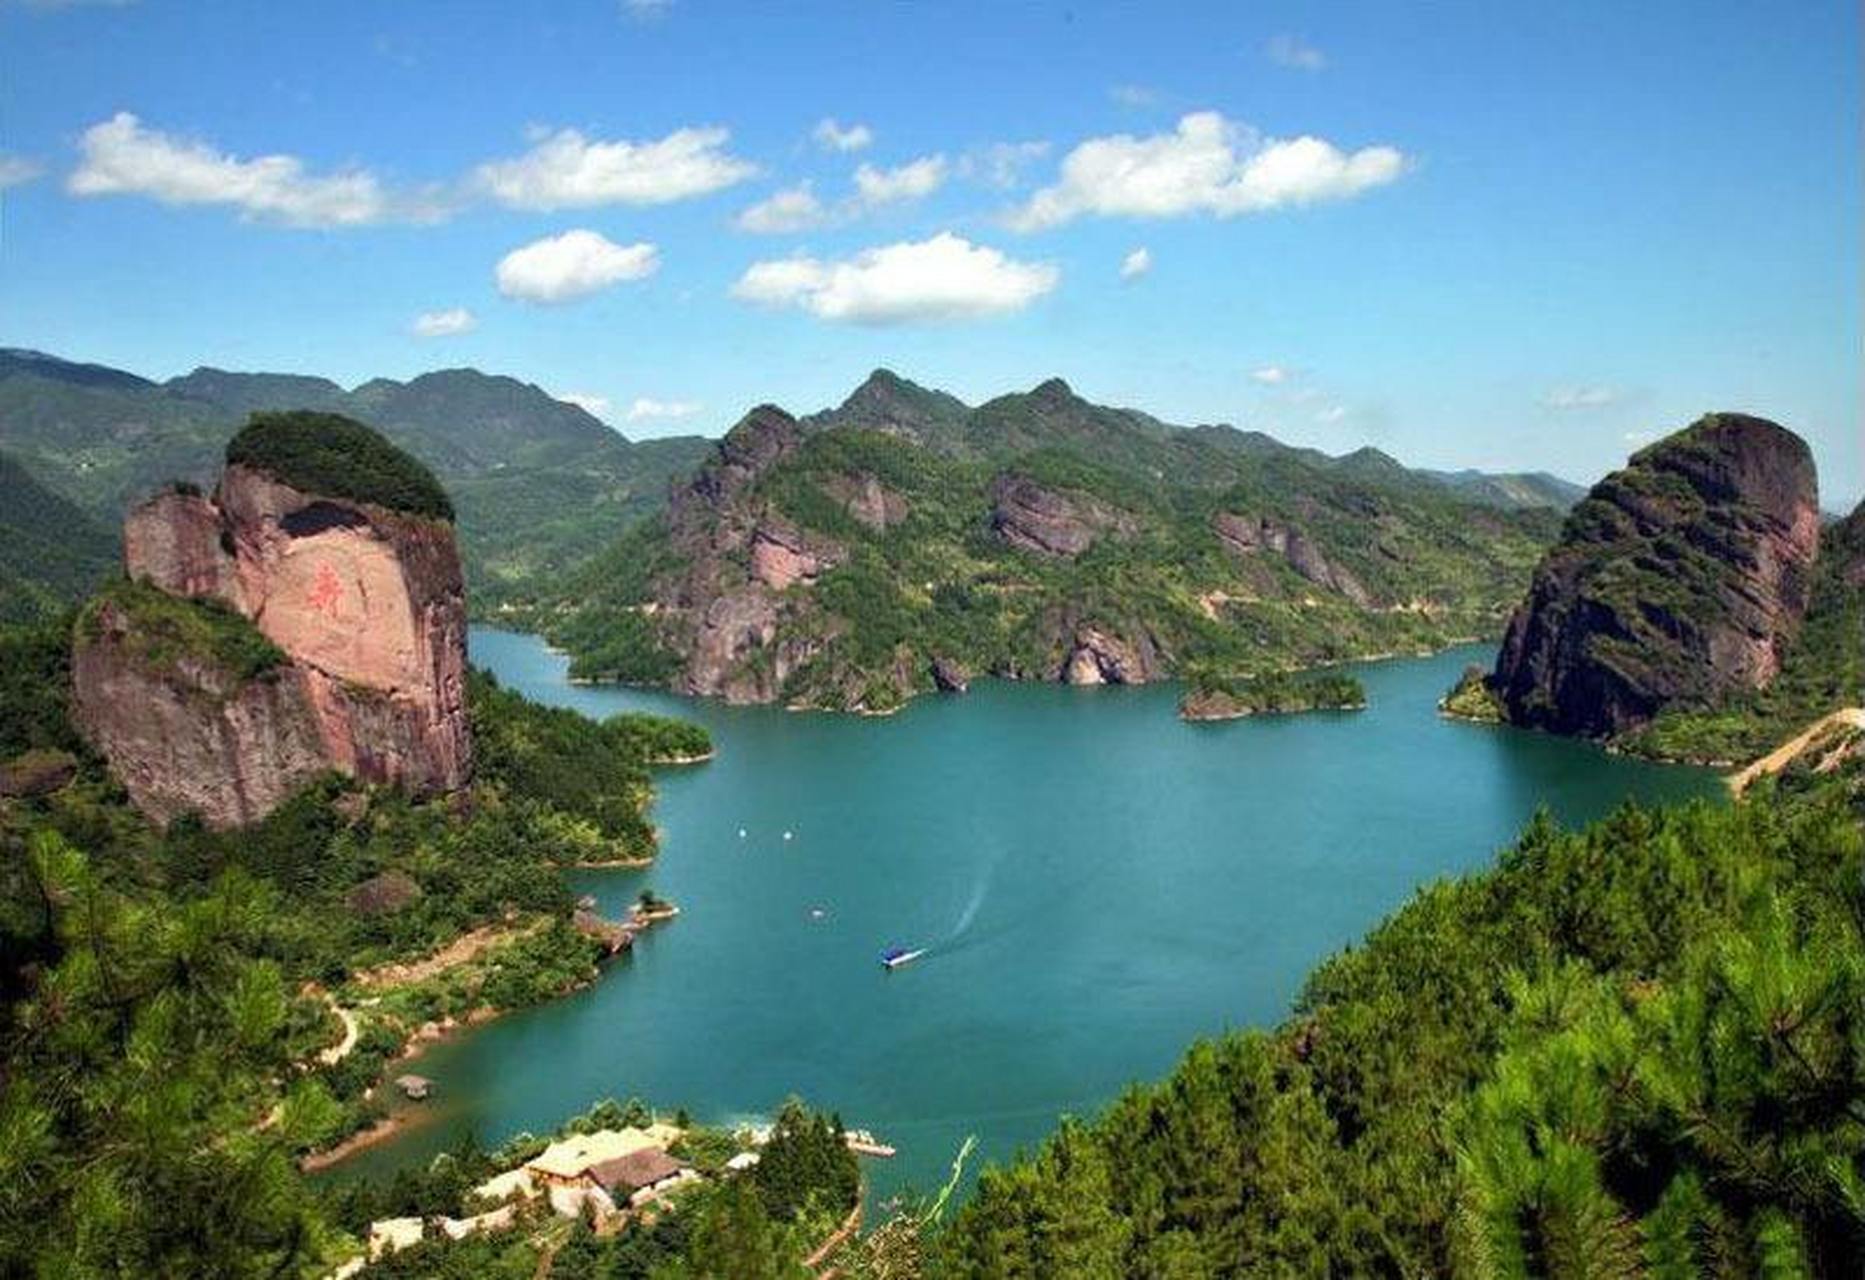 九仙湖风景区位于江西省上饶市广丰县东北部的铜拔山风景区其中的精华